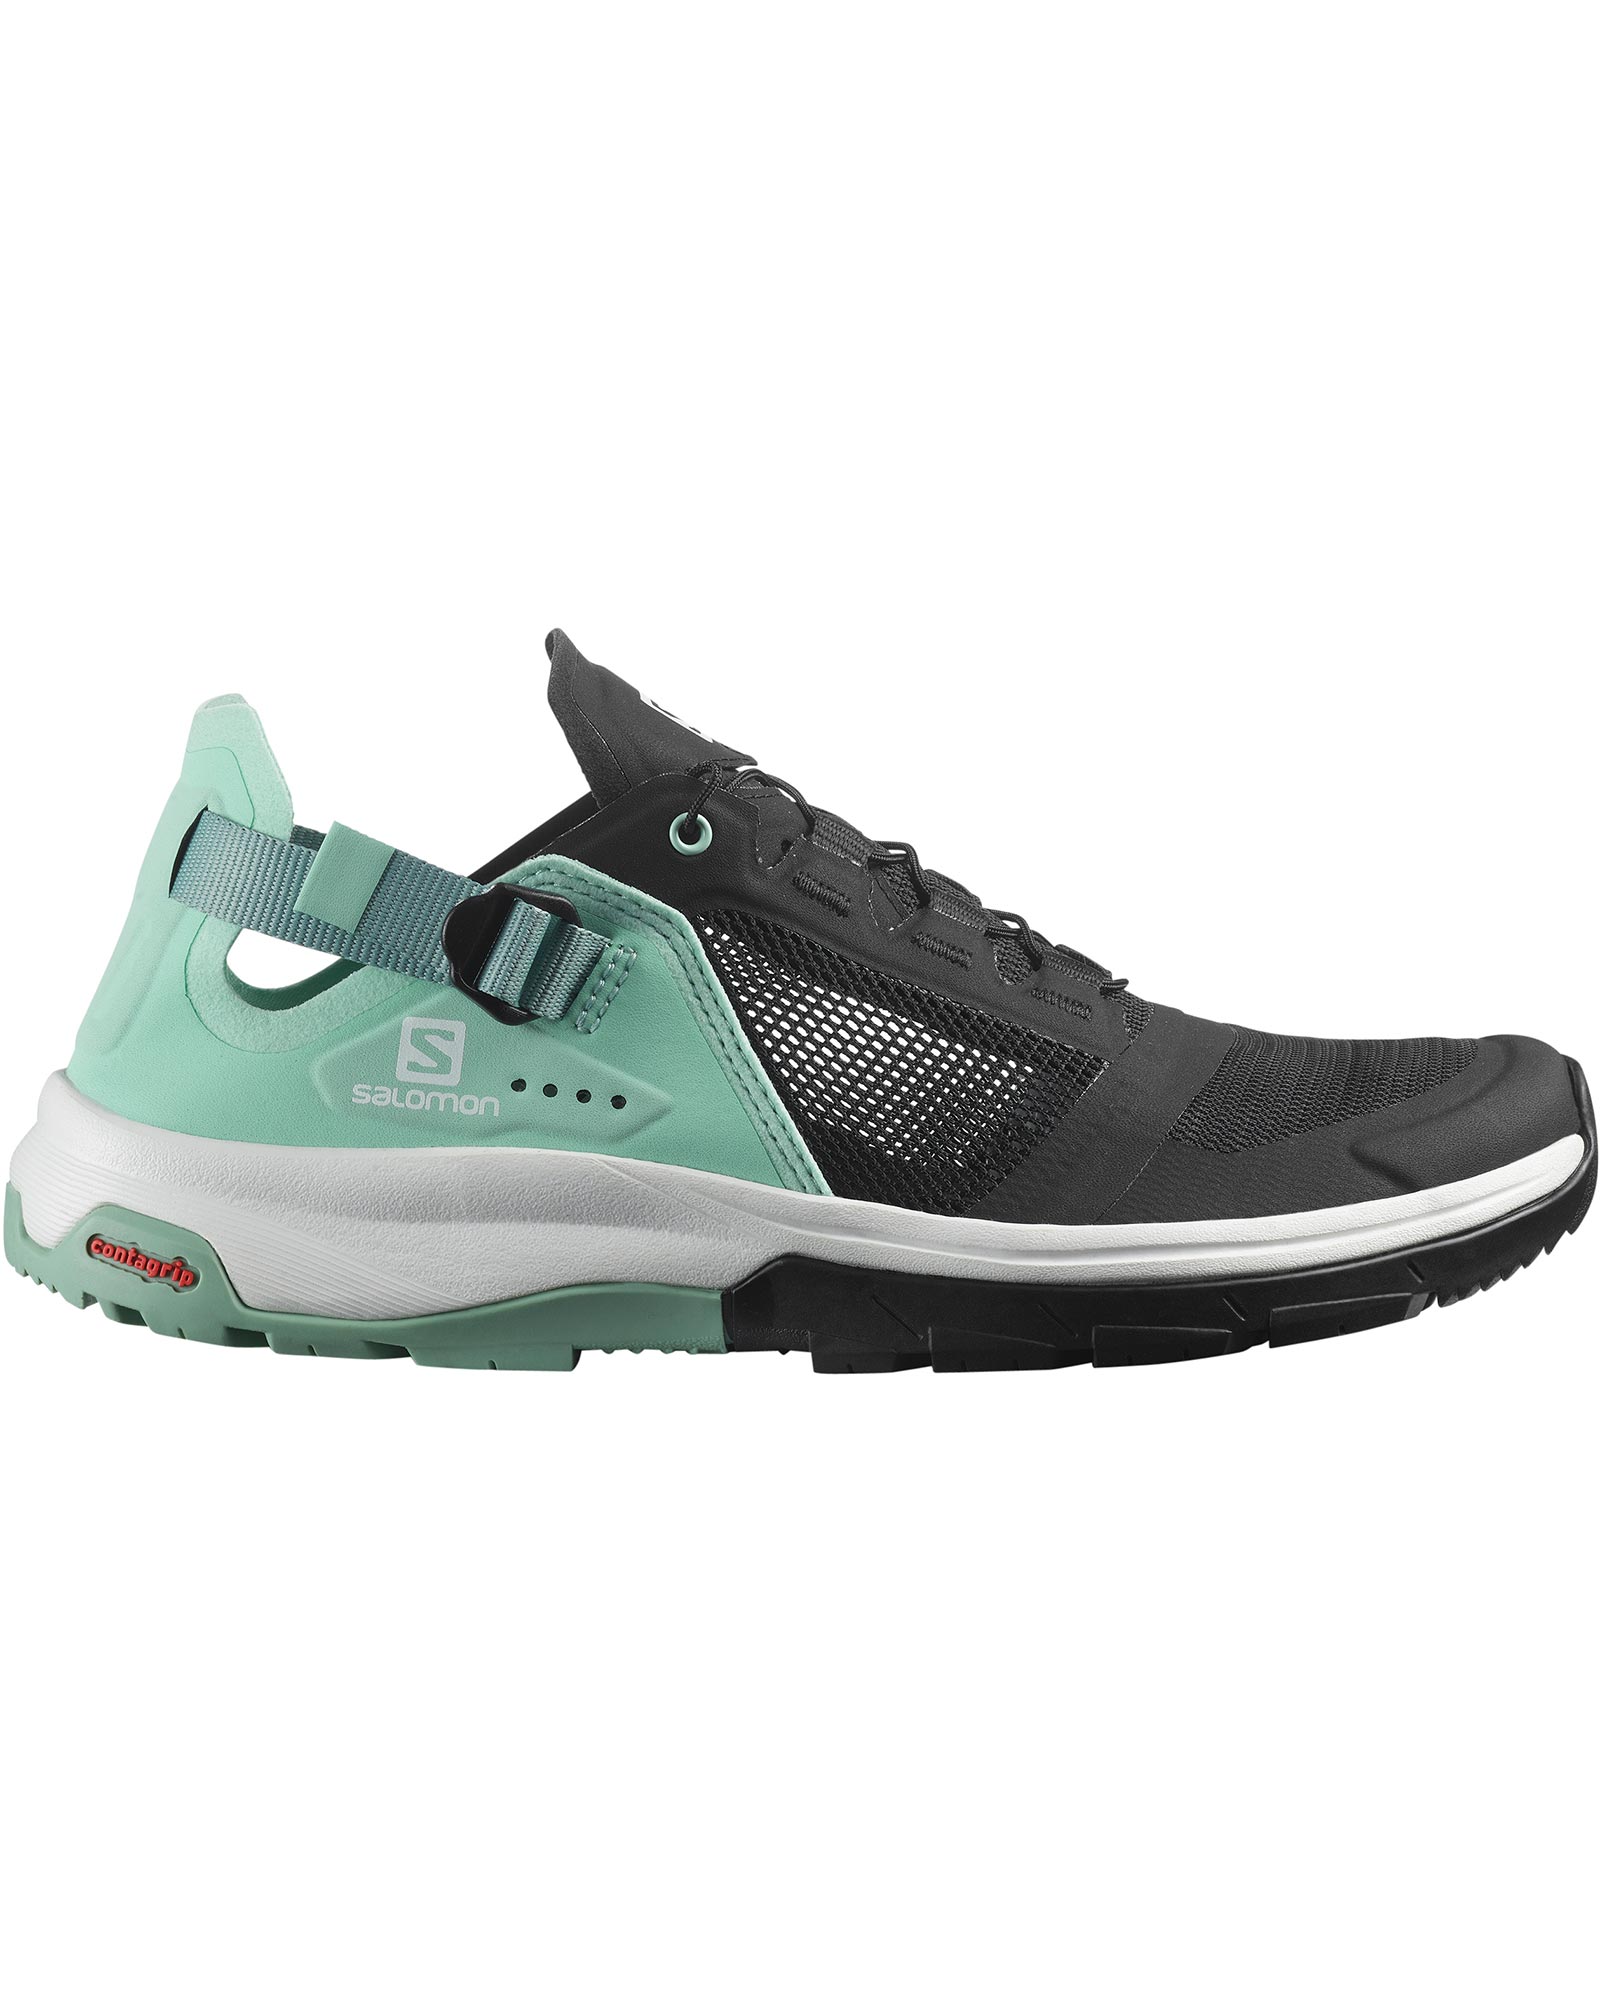 Salomon Tech Amphib 4 Women’s Shoes - Black/Yucca/Granite Green UK 7